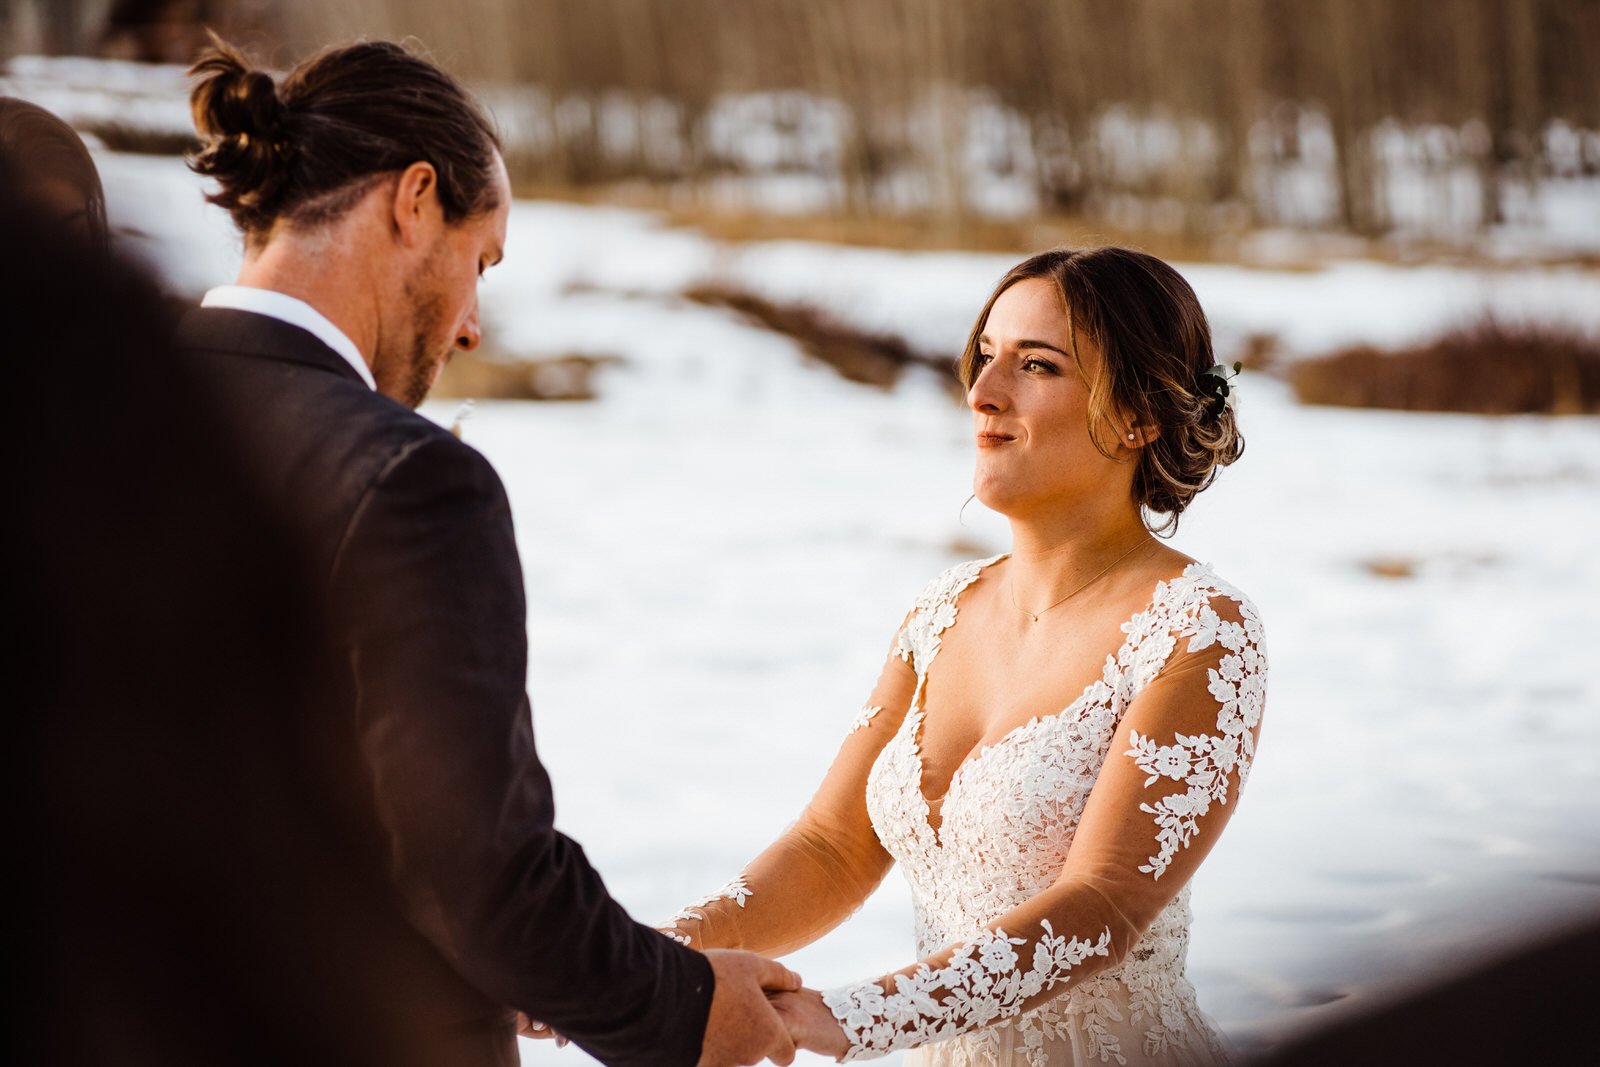 Colorado-Elopement-Snowy-Wedding-Ceremony4.jpg